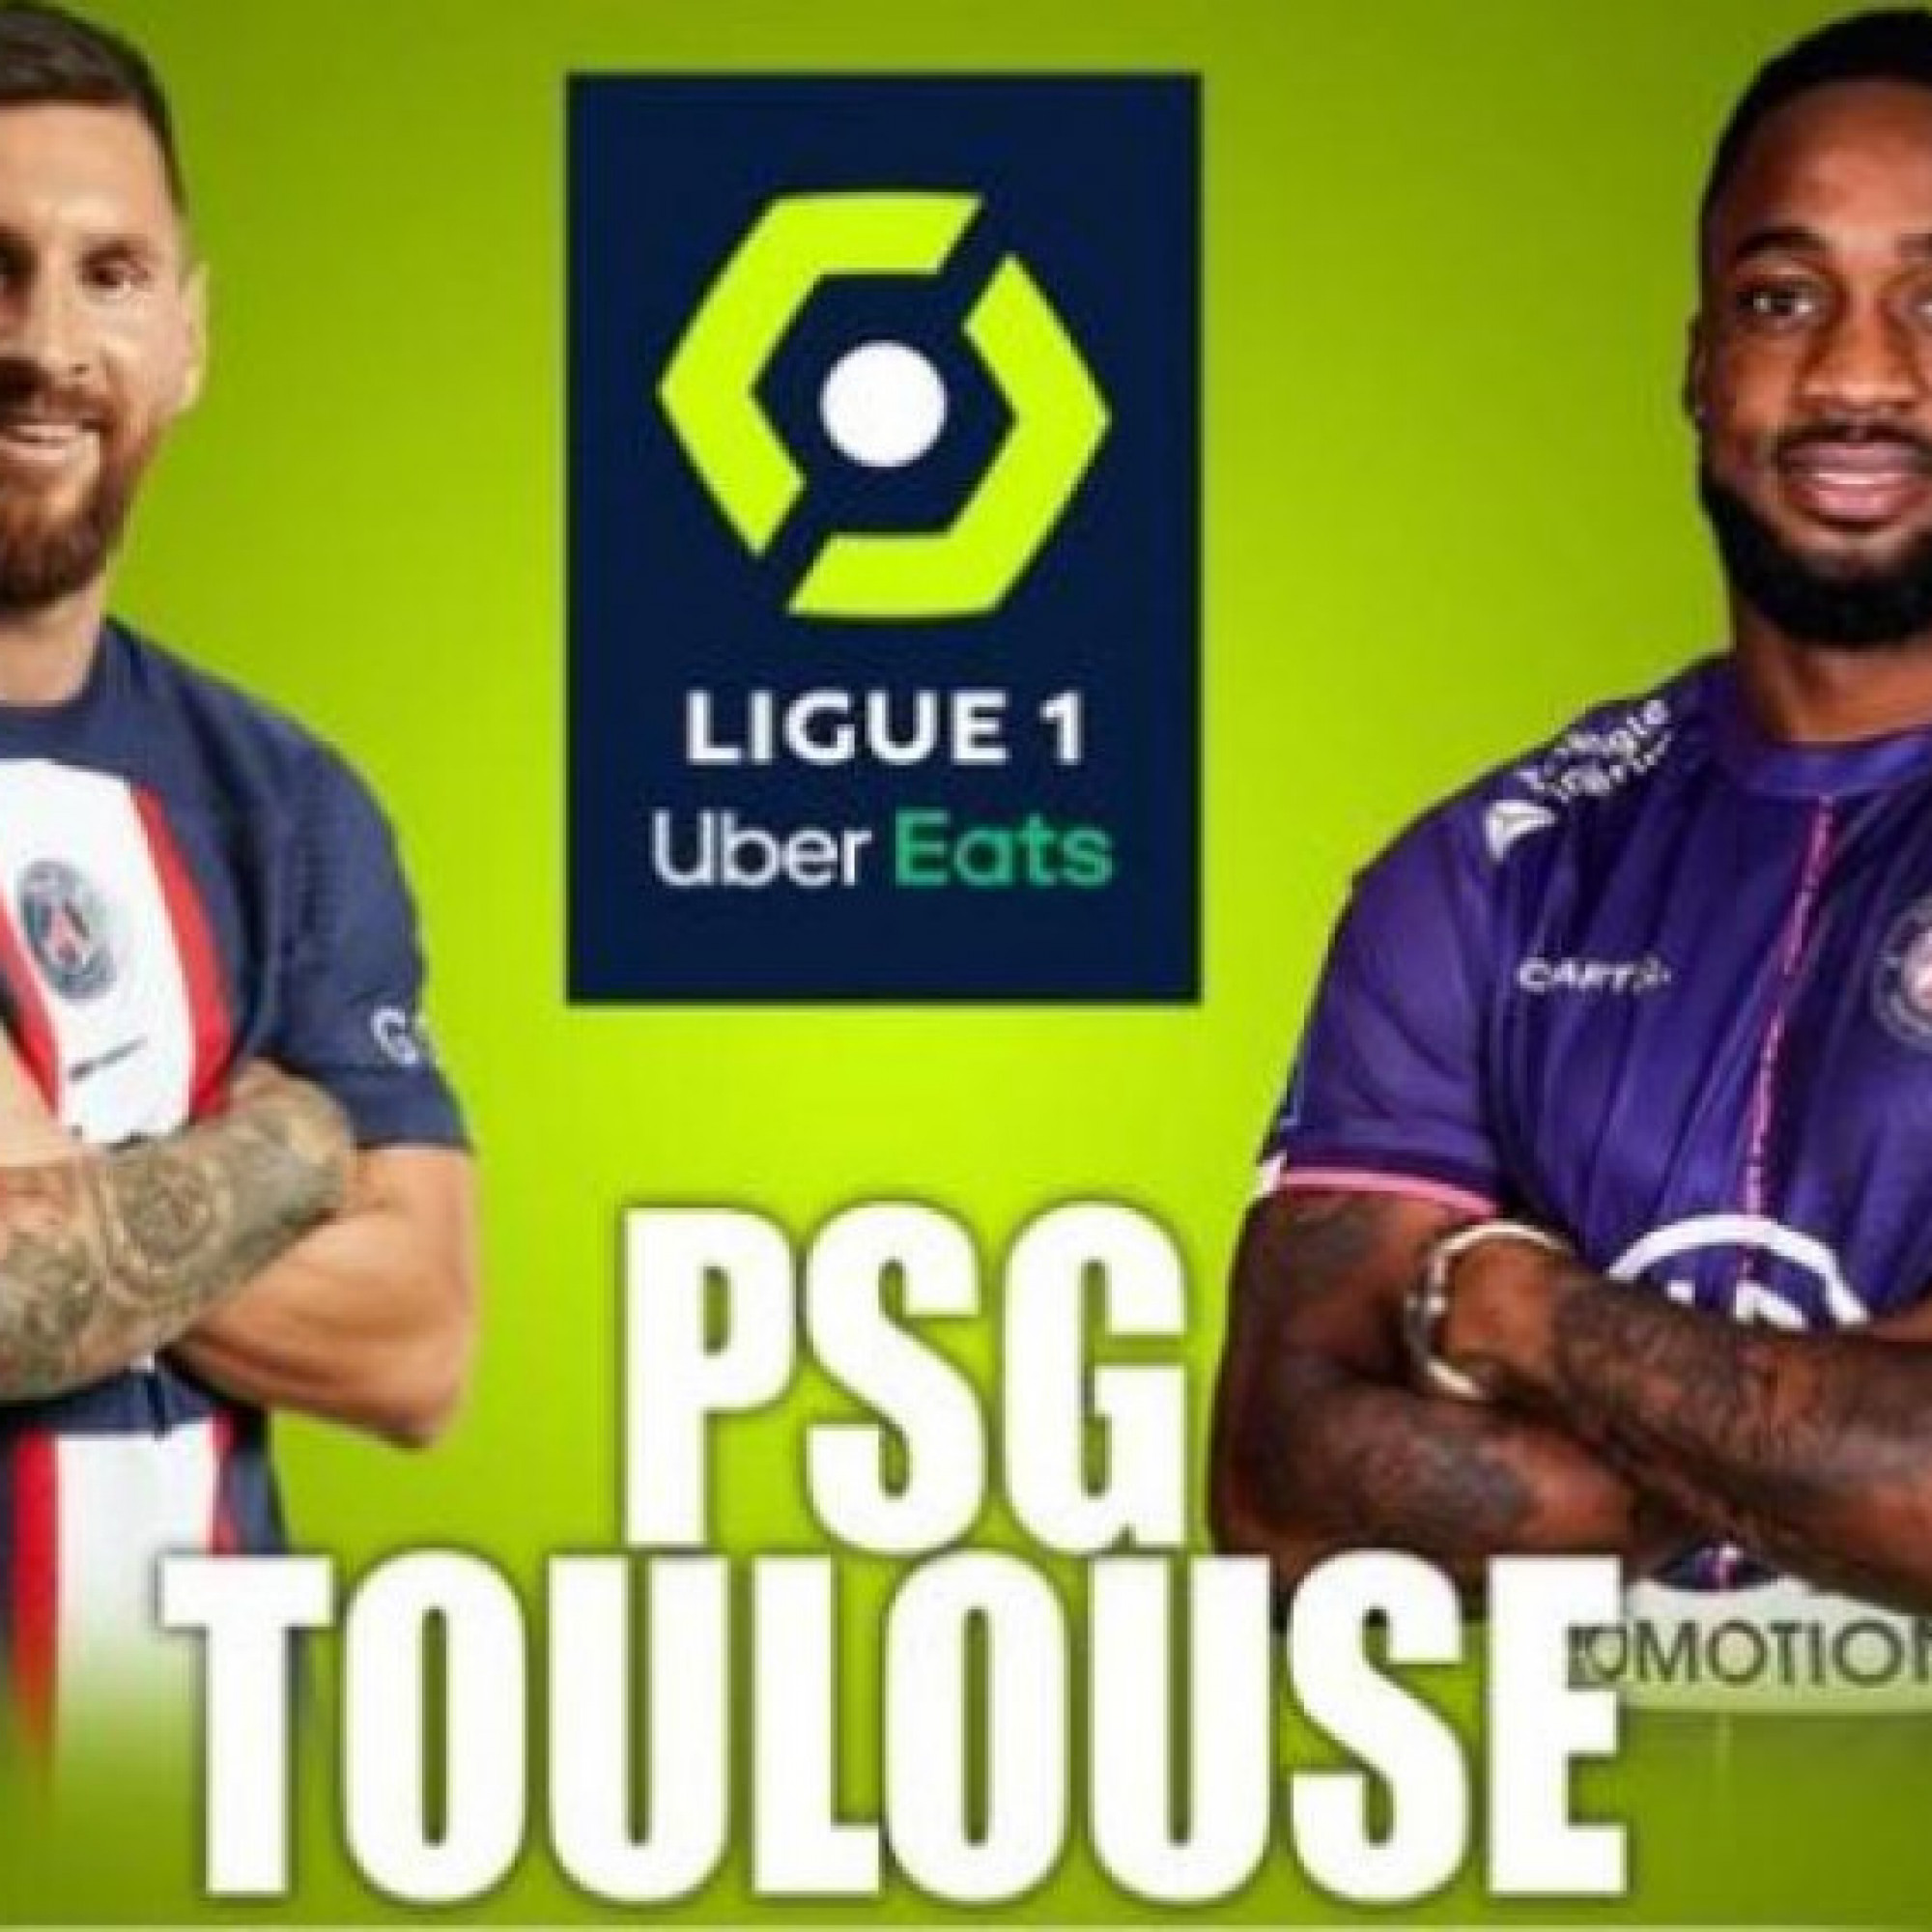  - Trực tiếp bóng đá PSG - Toulouse: Chờ đợi Messi rực sáng (Ligue 1)